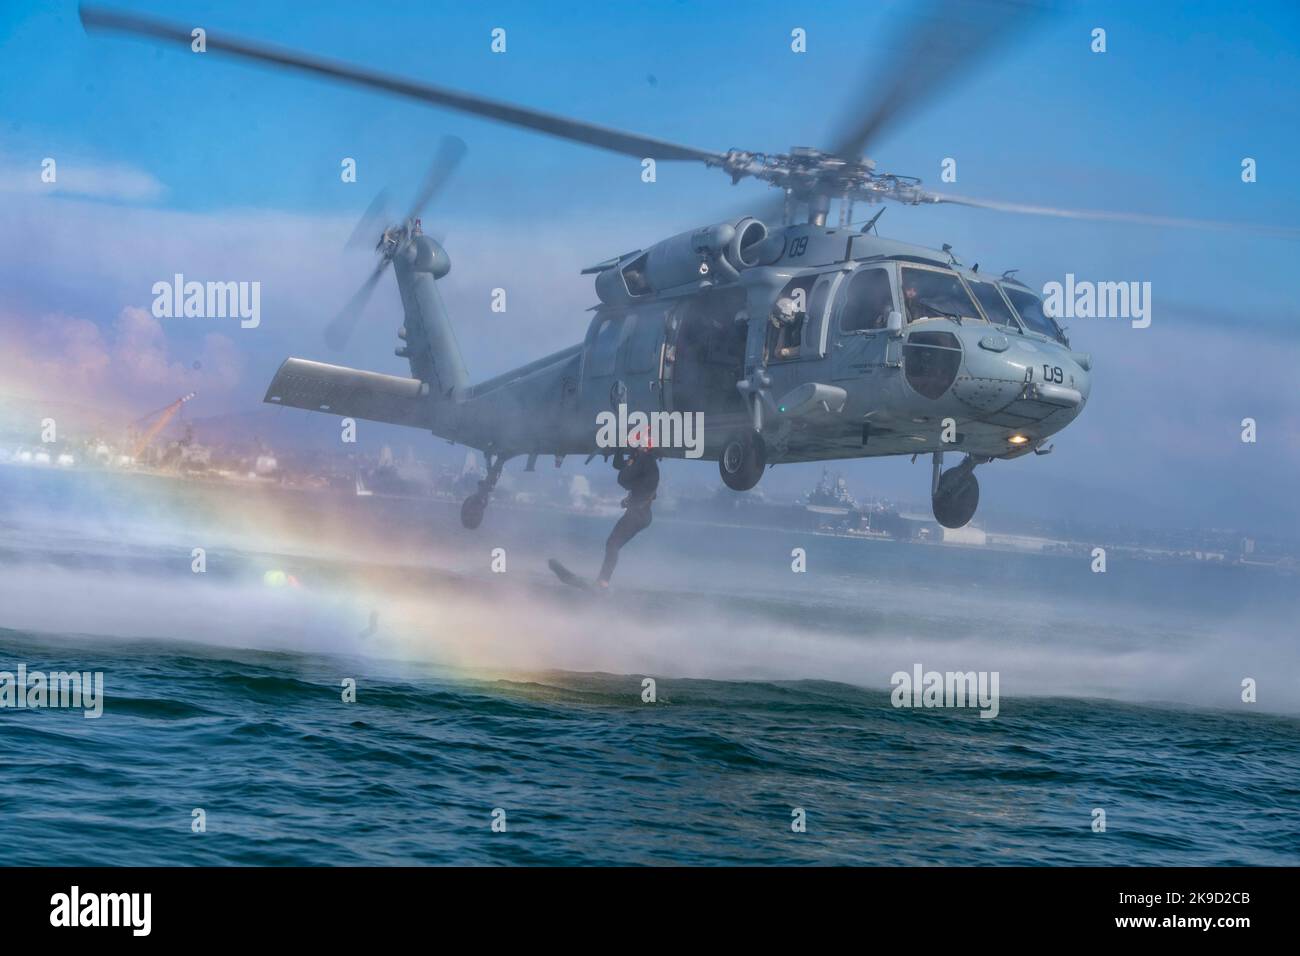 Un avión naval de los EE.UU. (Helicóptero), asignado al Jefe de Operaciones Navales (CNO) Modelo de Gerente de Búsqueda y Rescate (SARMM) del Escuadrón de Combate Marino de Helicóptero (HSC) 3, salta desde el helicóptero MH-60s Sikorsky Seahawk durante un ejercicio dinámico de prueba de concepto en Glorietta Bay en Coronado, California, el 25 de agosto de 2022. Foto de stock